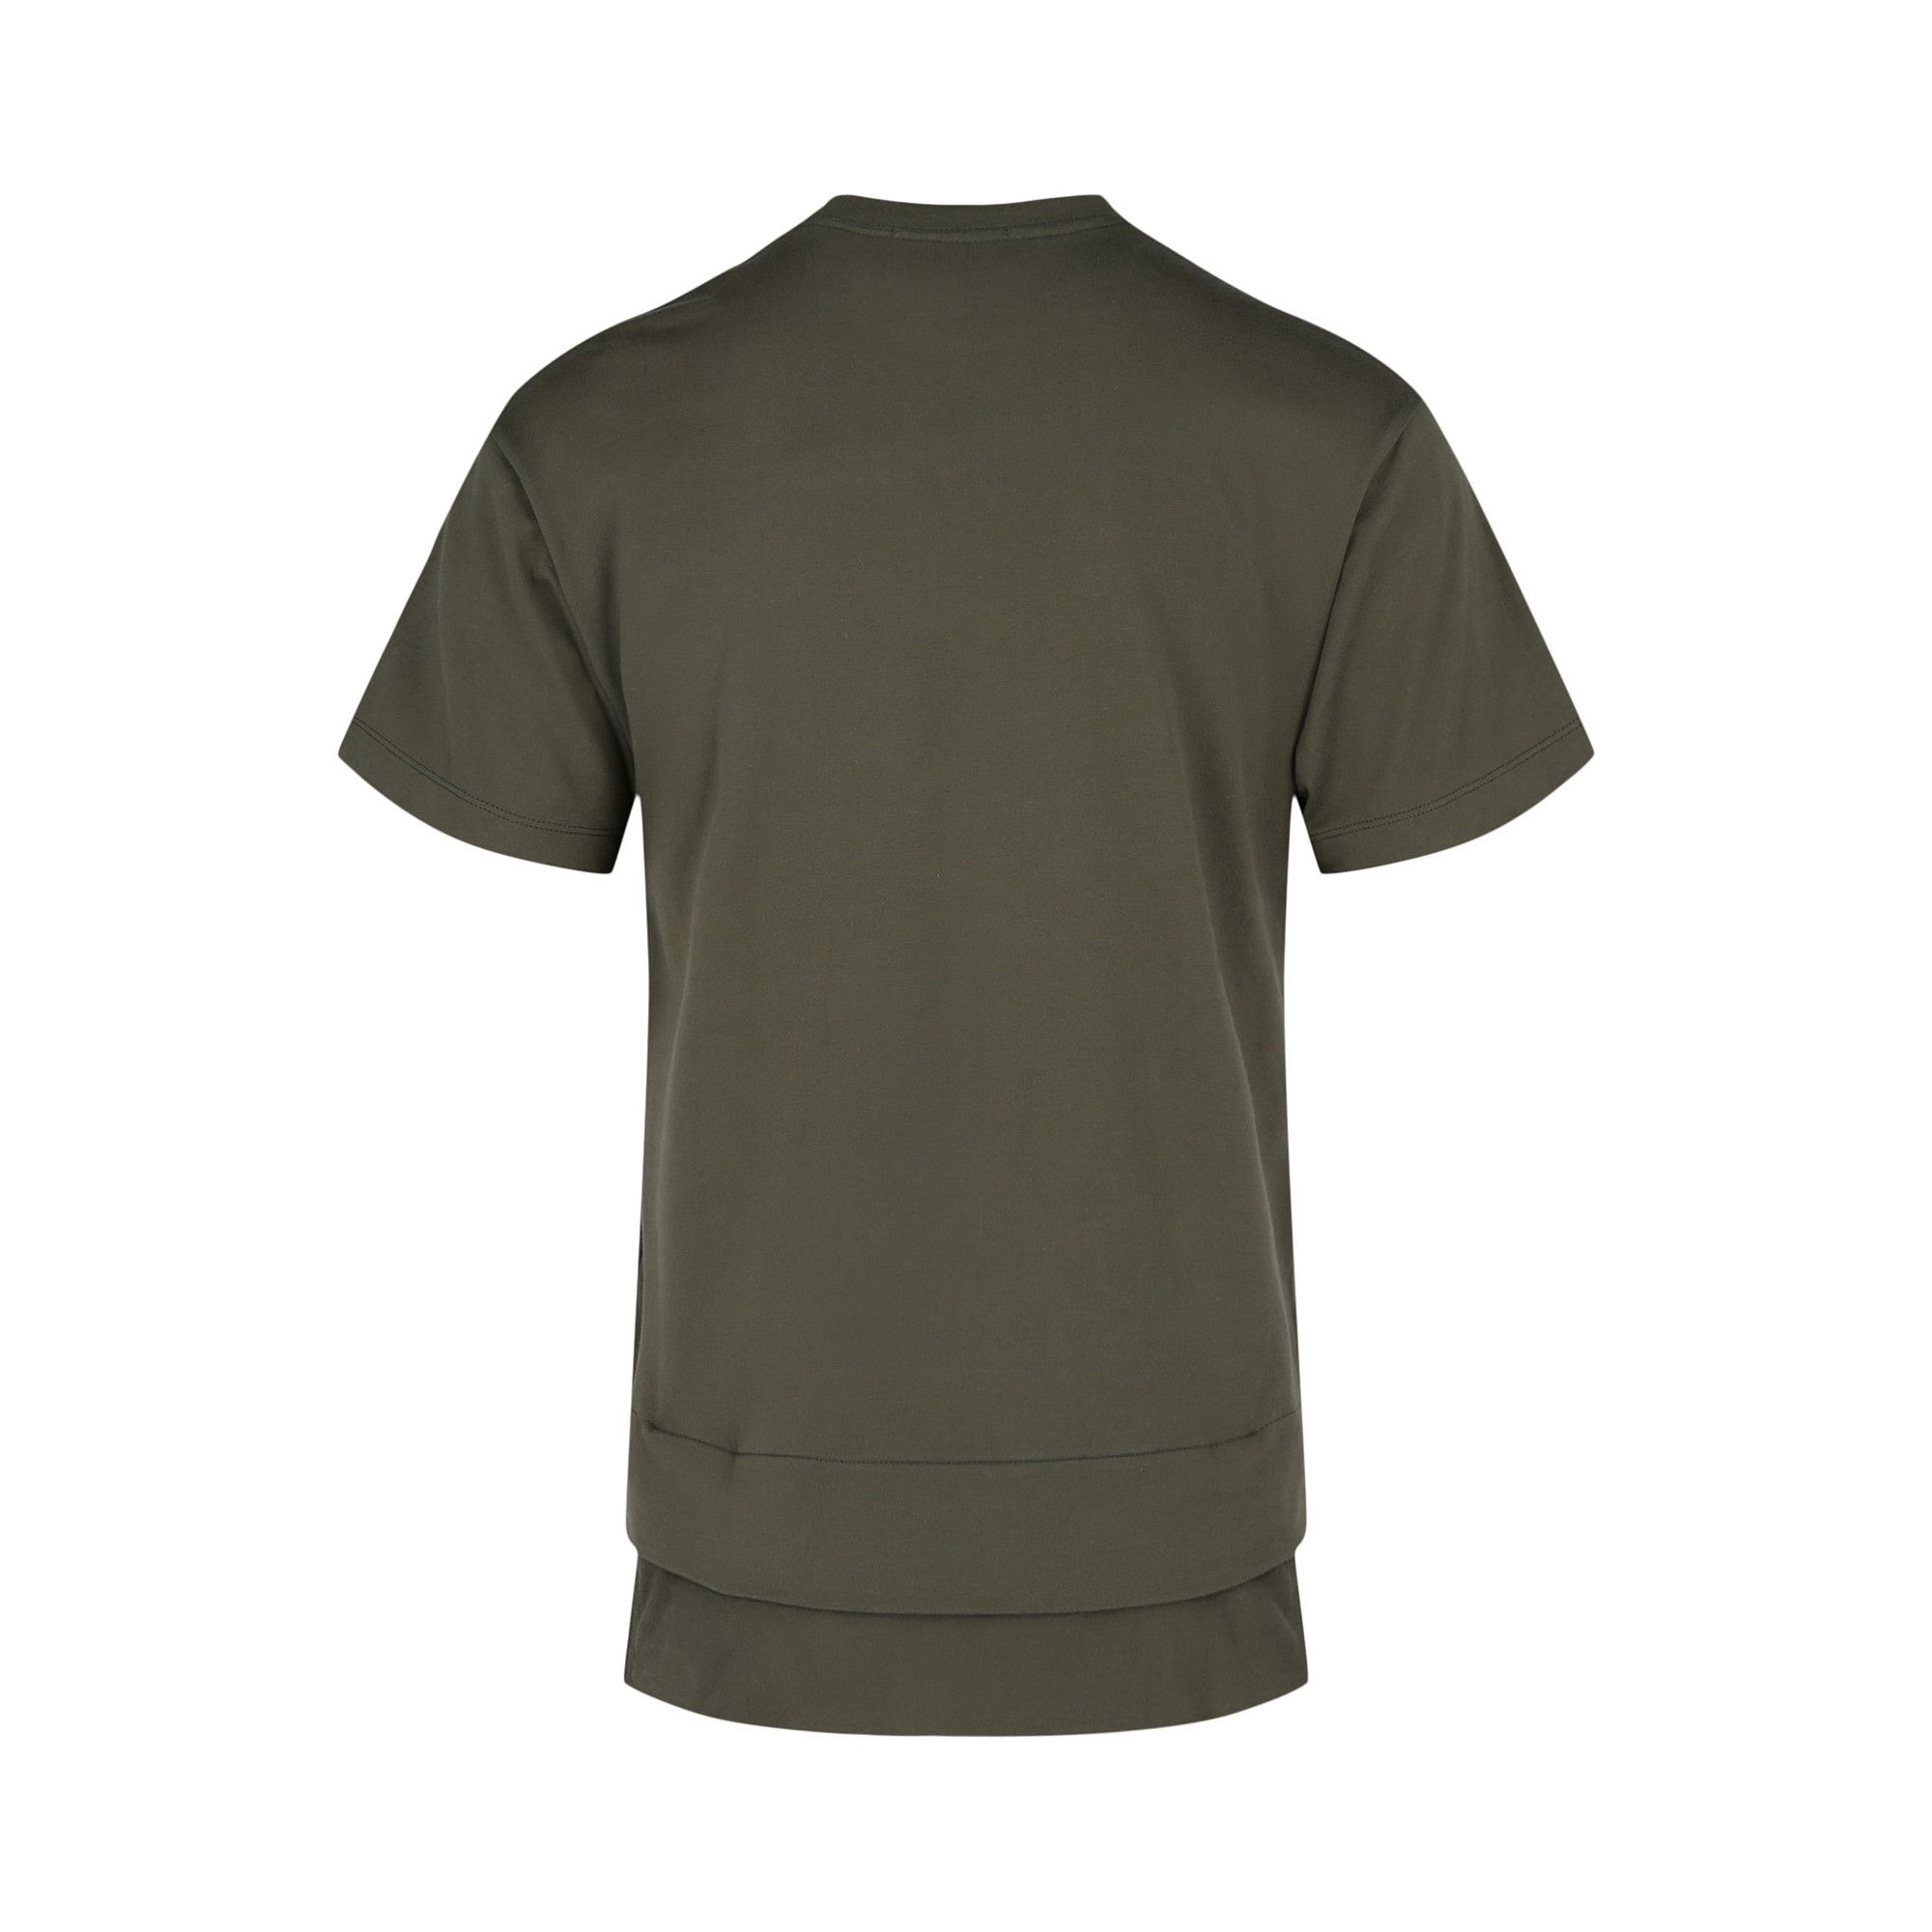 Ambush New Waist Pocket T-Shirt 'Green' - 2